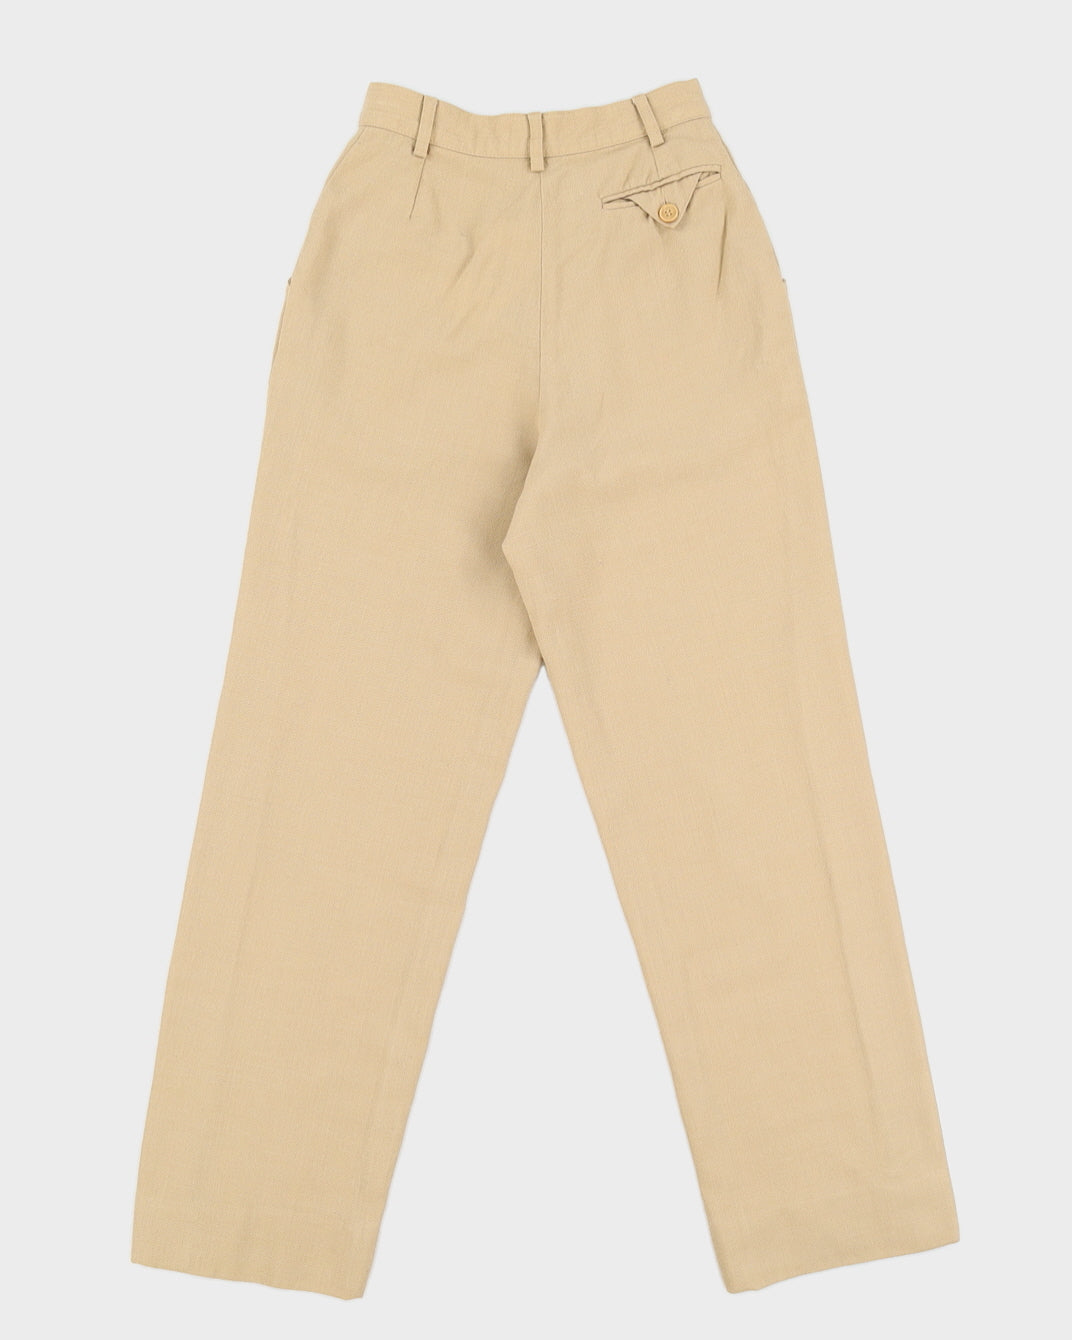 Vintage 80s Pierre Balmain Beige Trousers - W24 L28